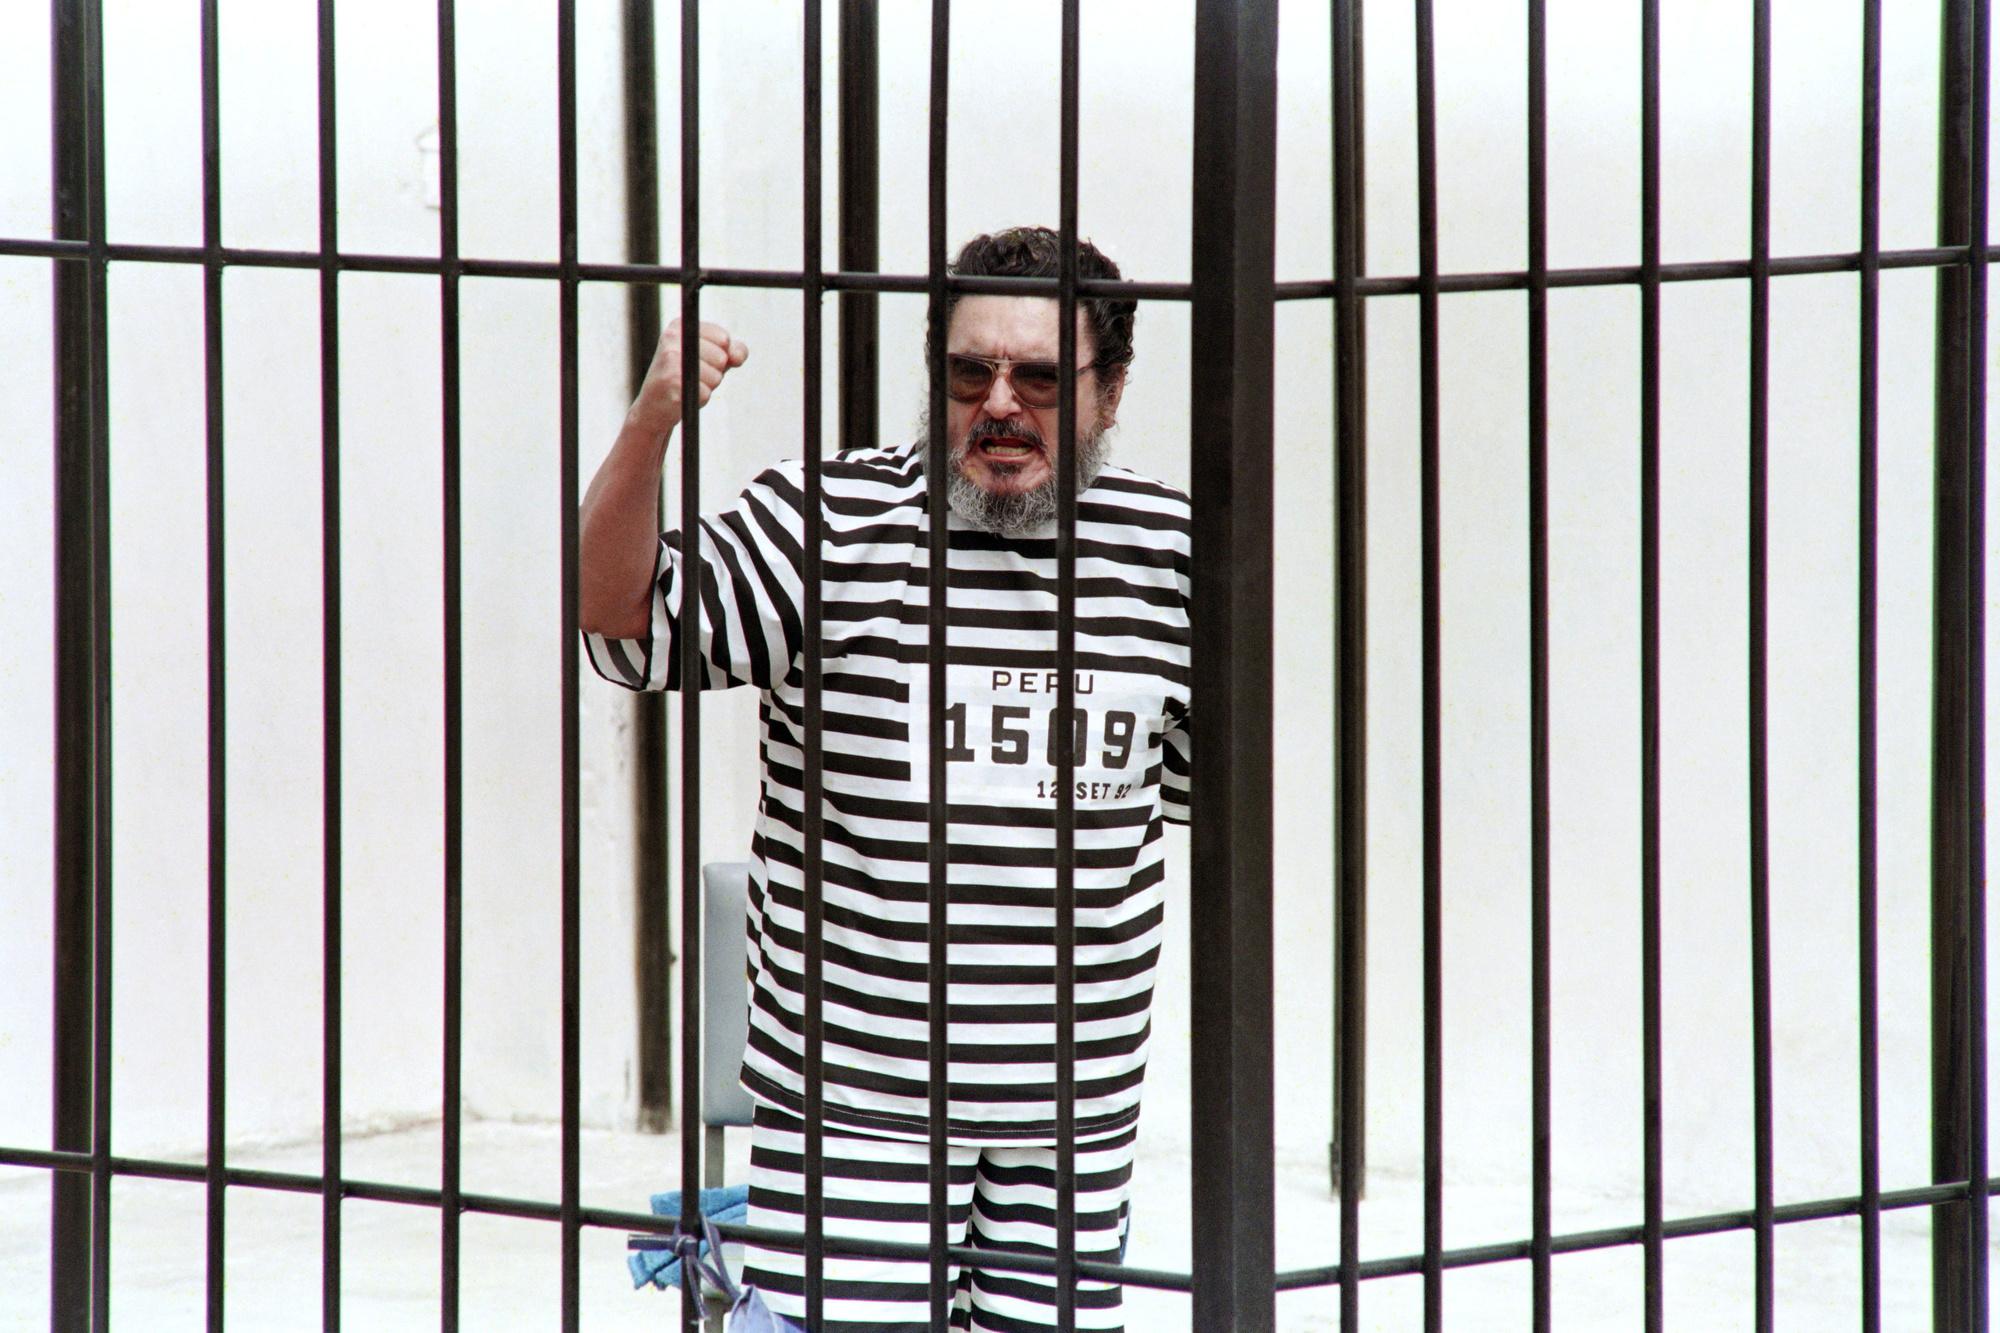 Guzman, kort na zijn arrestatie in 1992